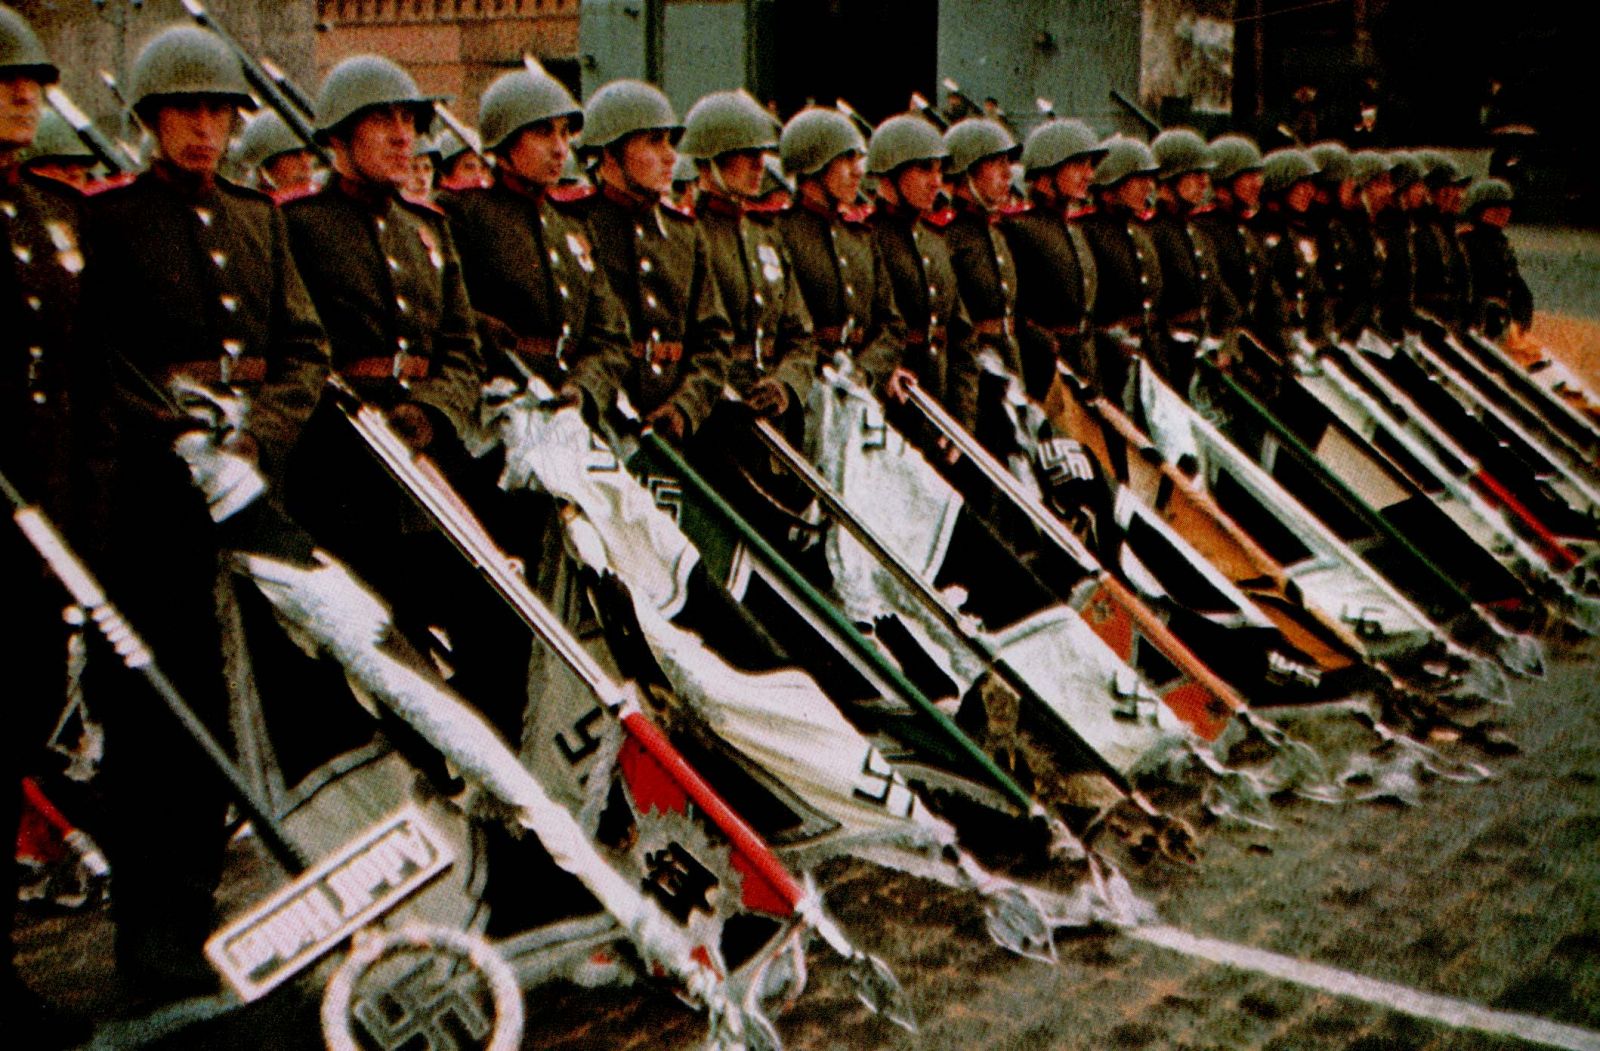 Фотографию Парада Победы признали демонстрацией нацистской символики